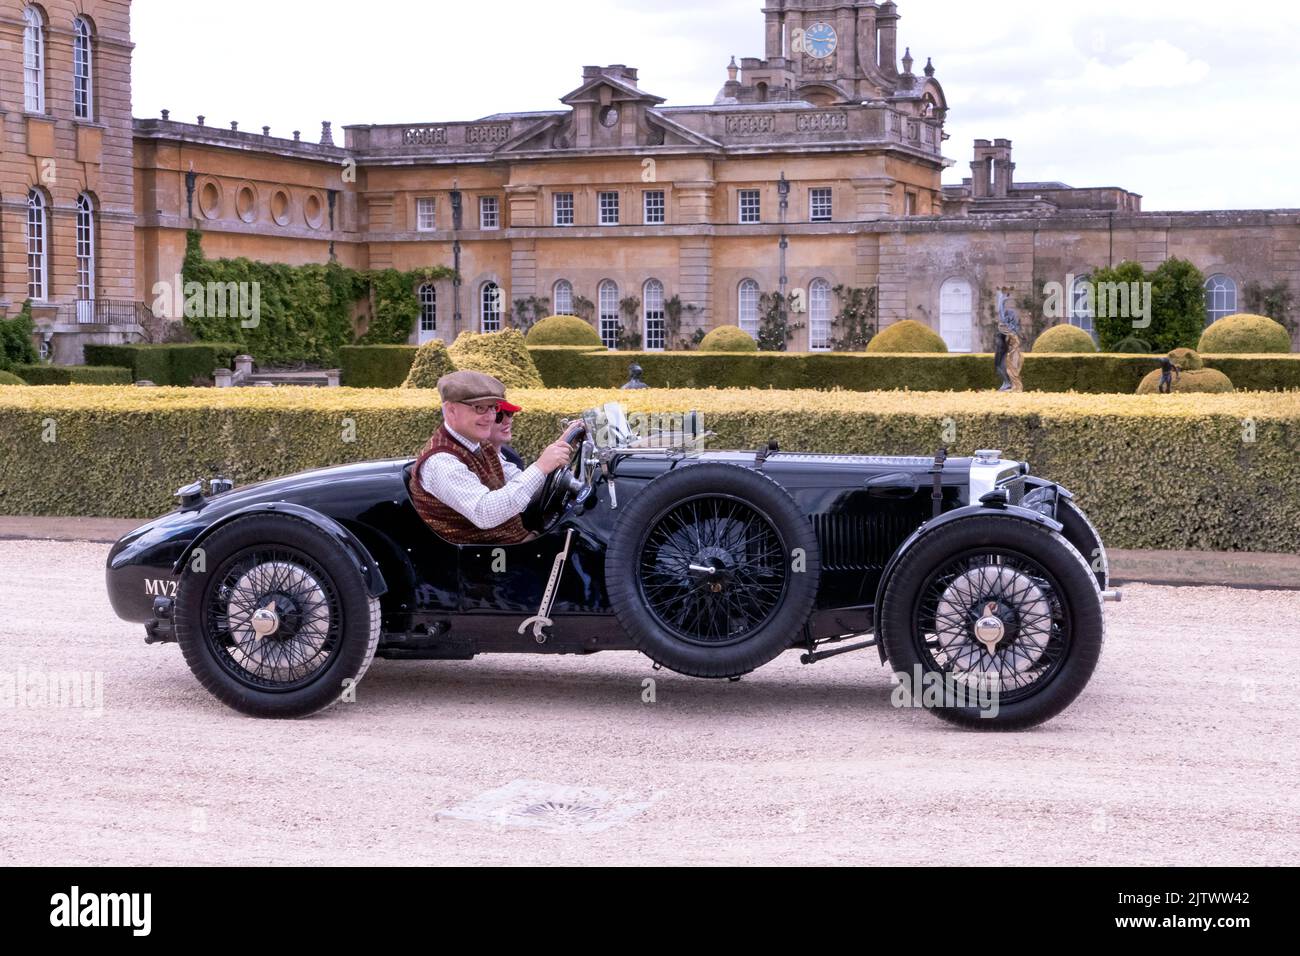 1932 Aston Martin LM9 au salon Prive Concours au Blenheim Palace Oxfordshire Royaume-Uni Banque D'Images